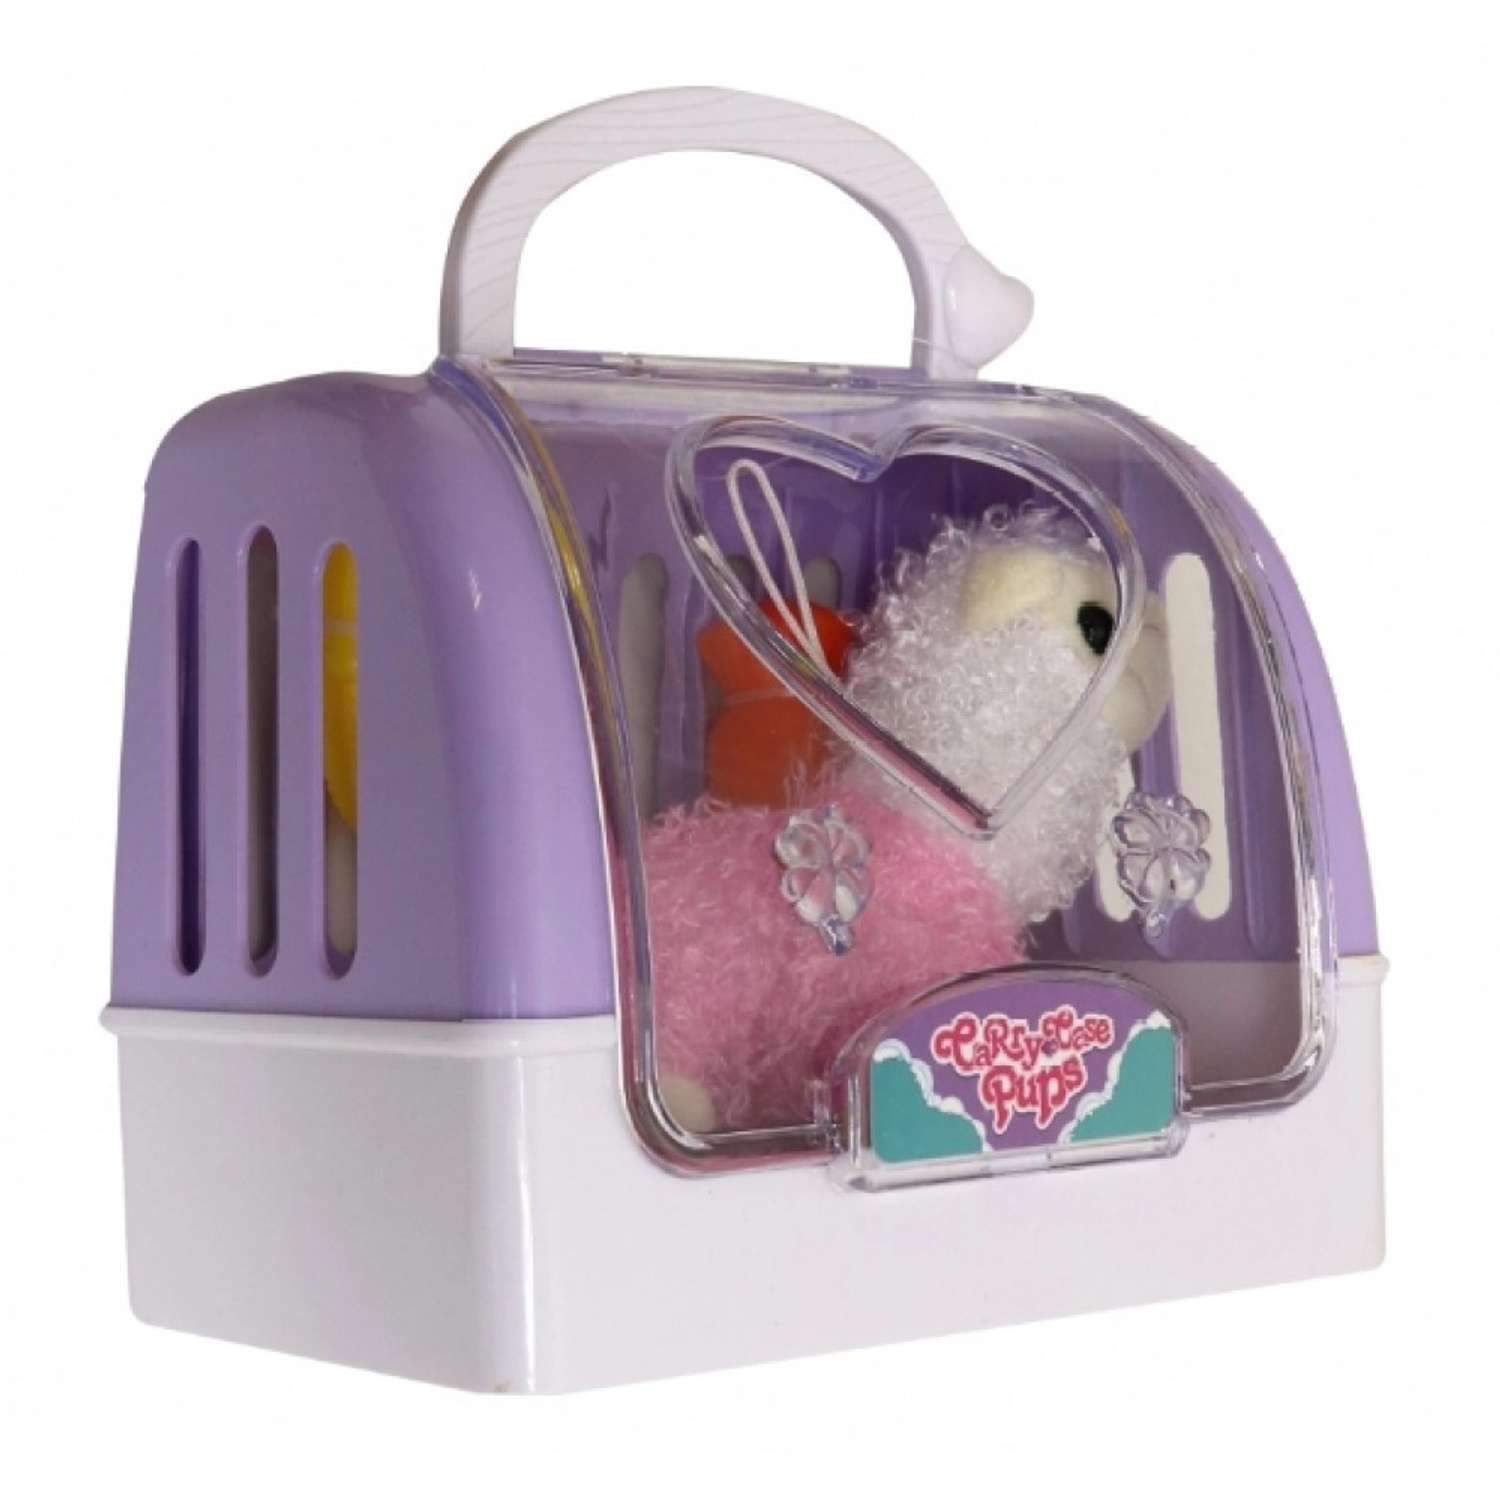 Мягкая игрушка мини EstaBella Альпака с домиком переноской. Розовая. 10 см. - фото 2